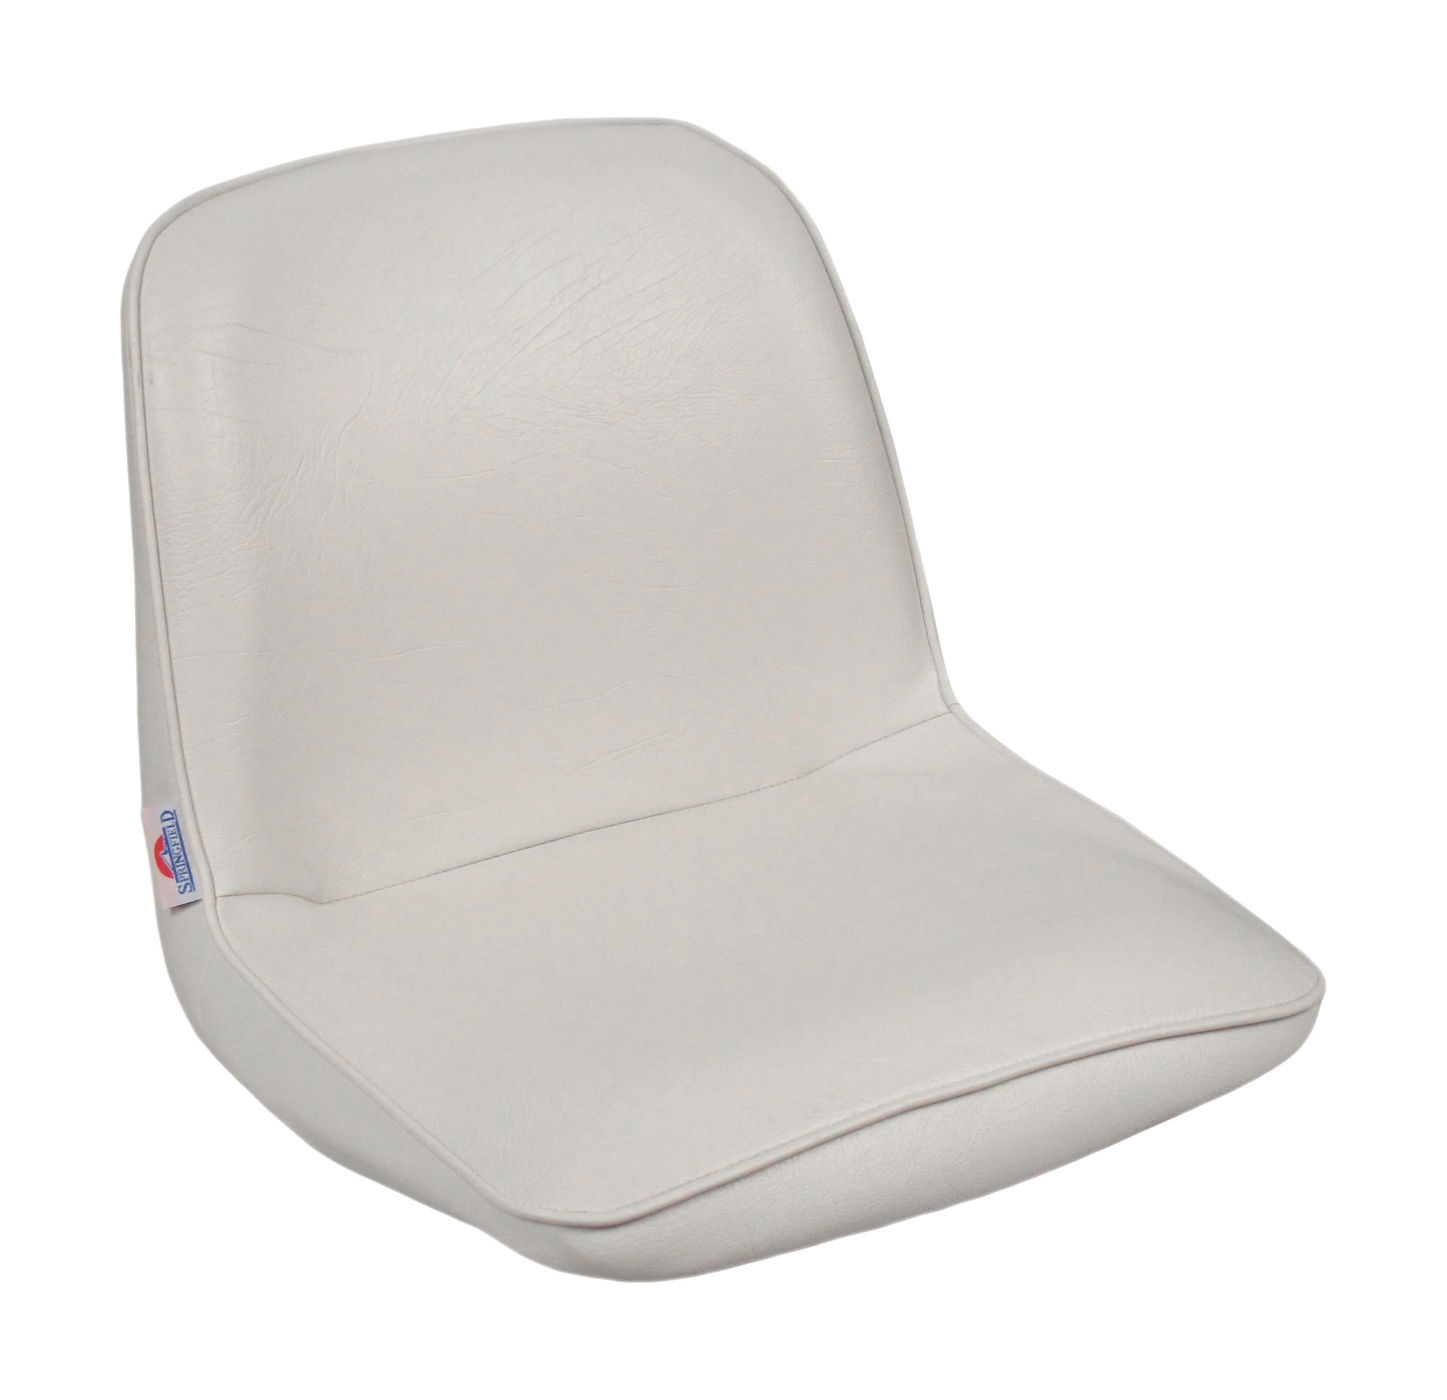 Кресло FIRST MATE мягкое, материал белый винил Springfield 1001006C